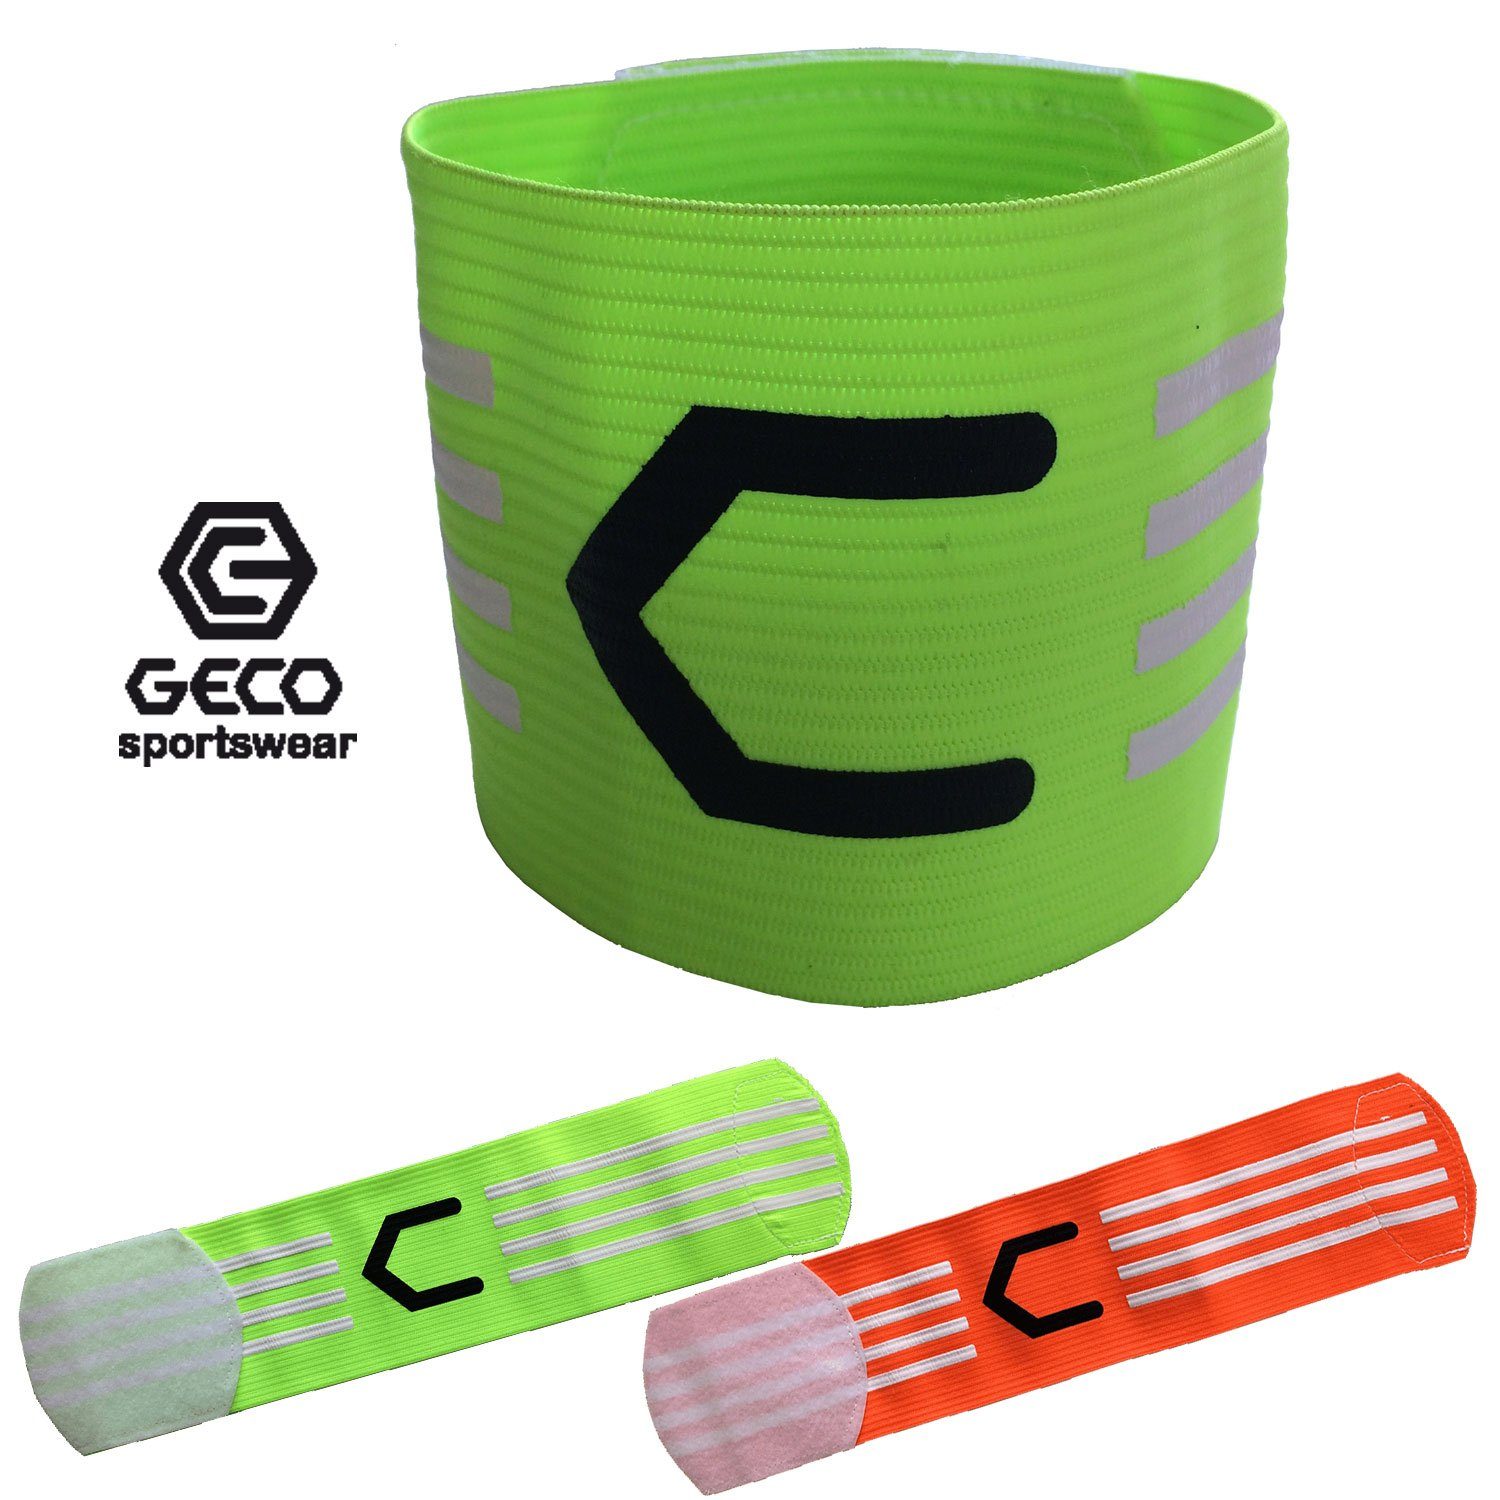 grün Farben neon grün orange Kapitänsbinde Kapitänsbinde Sportswear Geco orange NEON neon Fußball oder Geco und orange,